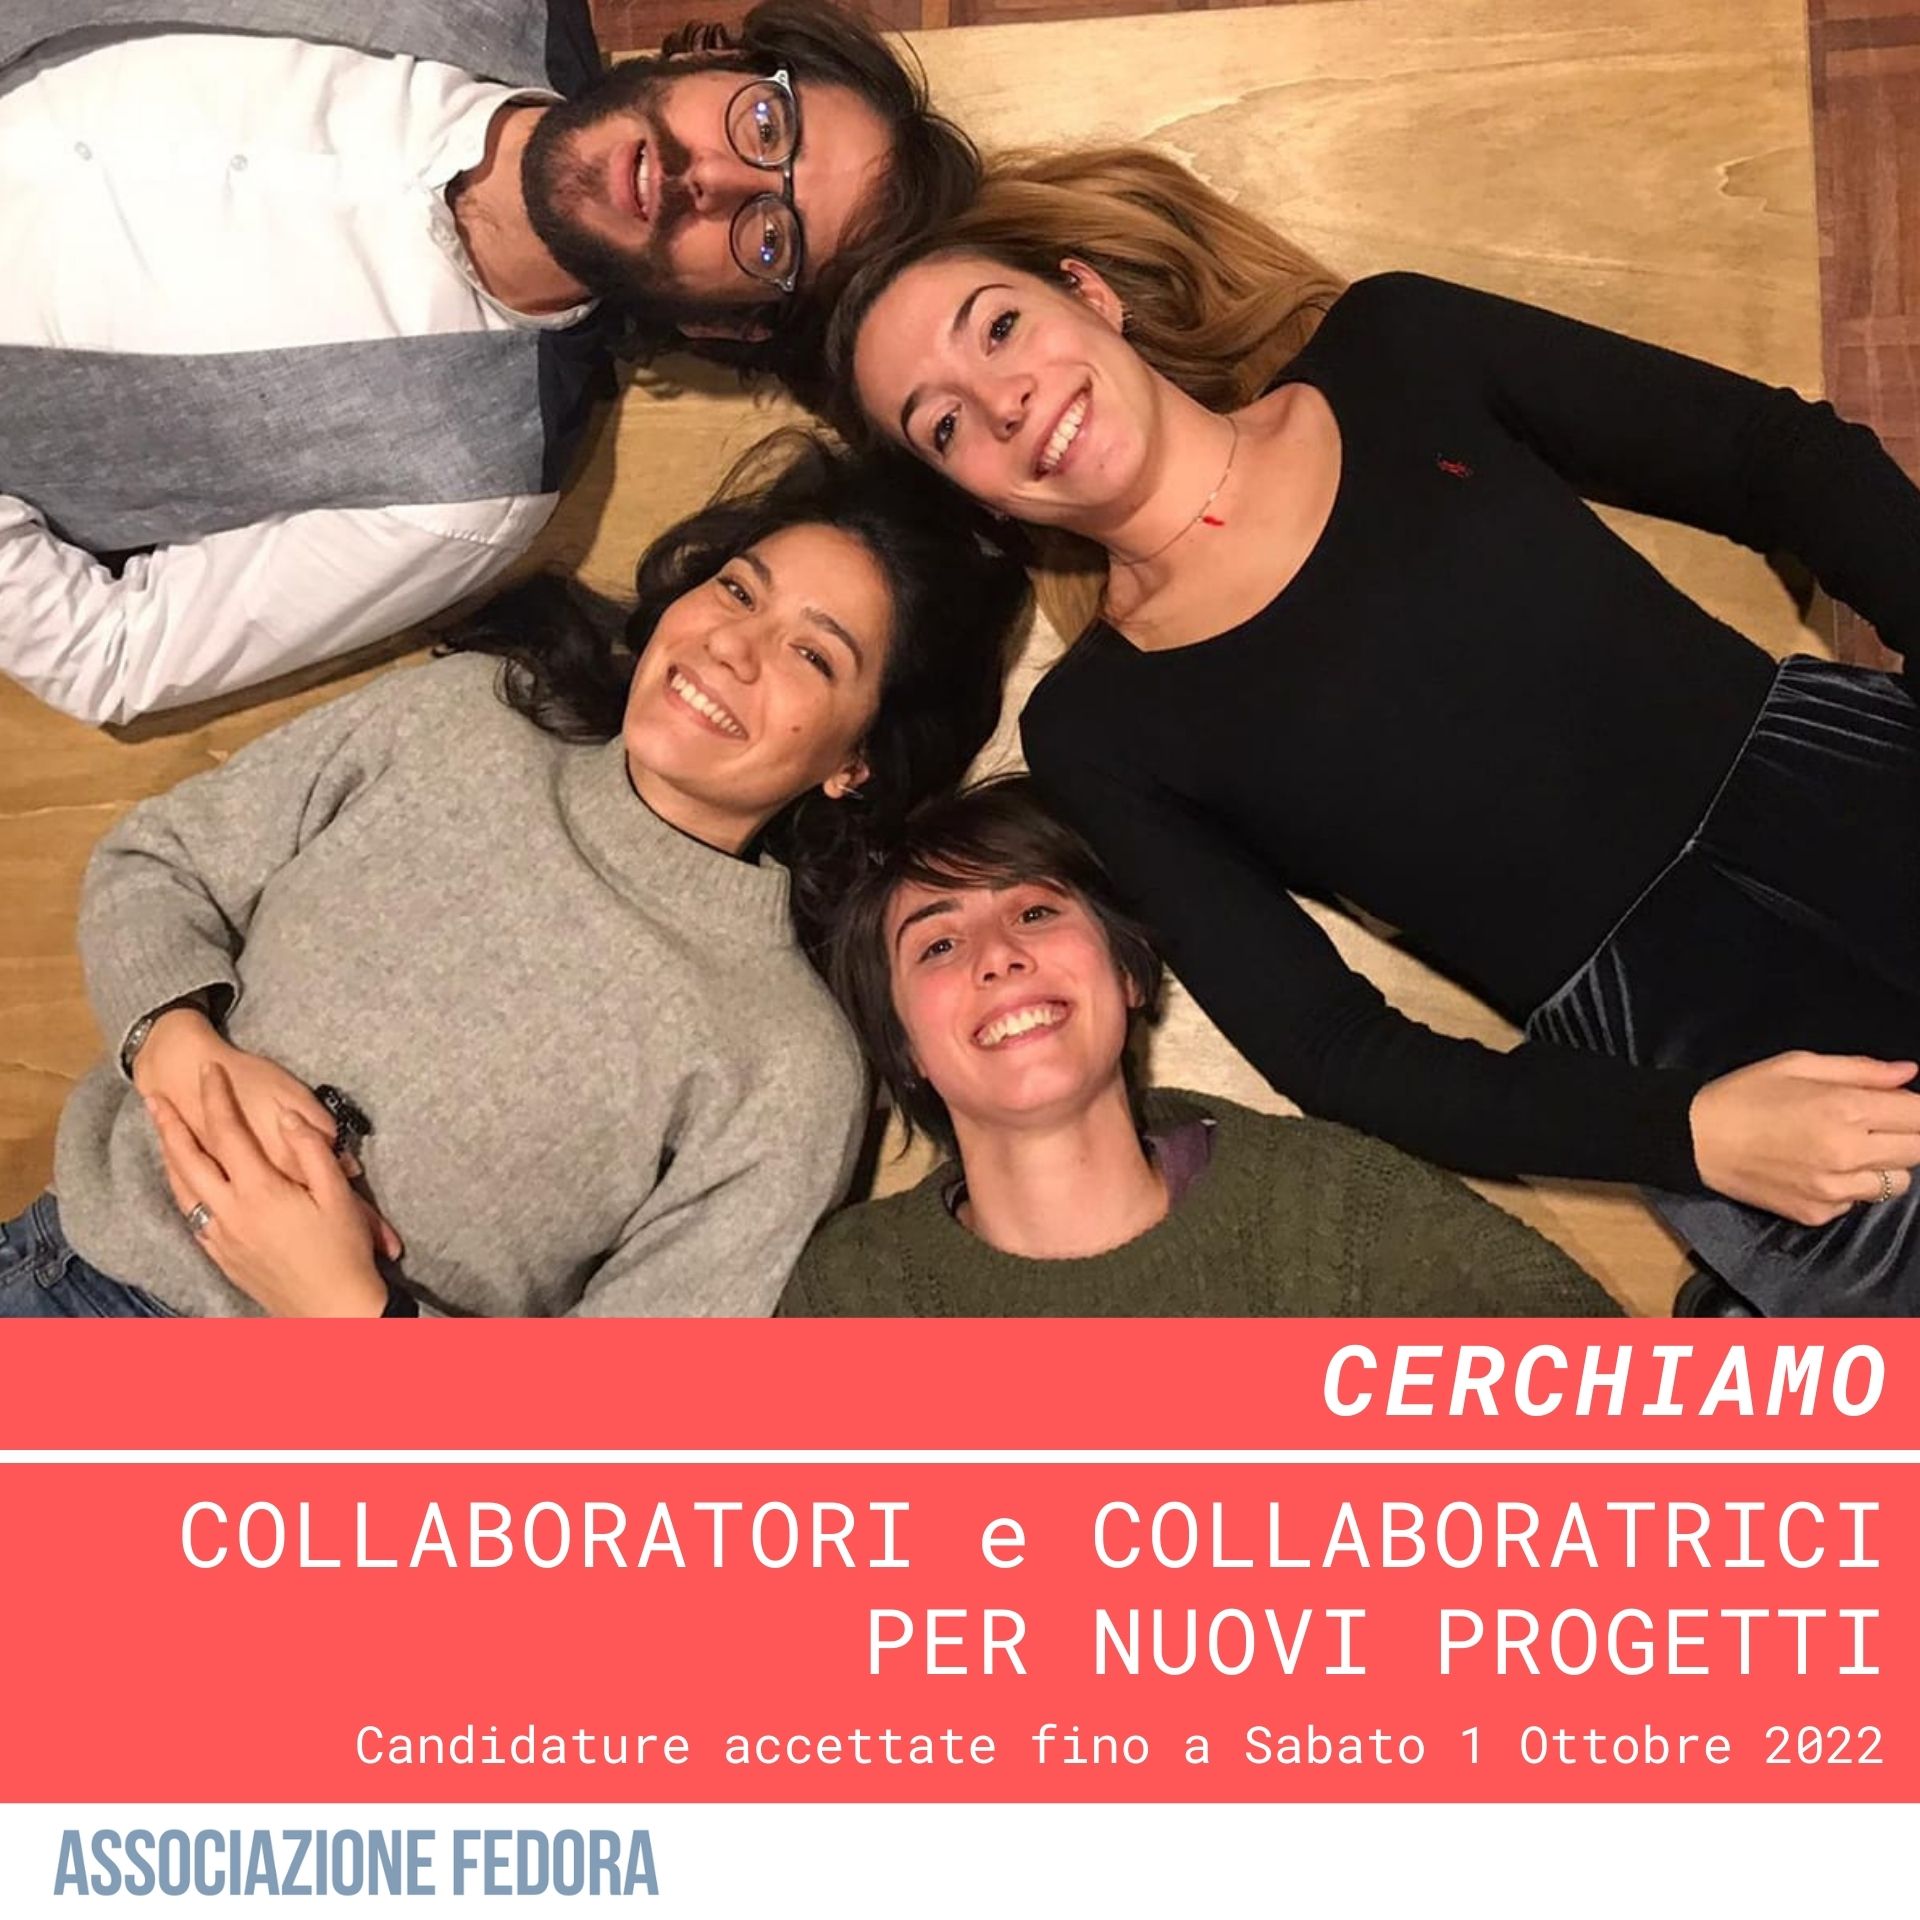 Nella foto il team di Associazione Fedora: Valeria, Luca, Ginevra e Sara, sdraiati sulla pedana sensoriale.